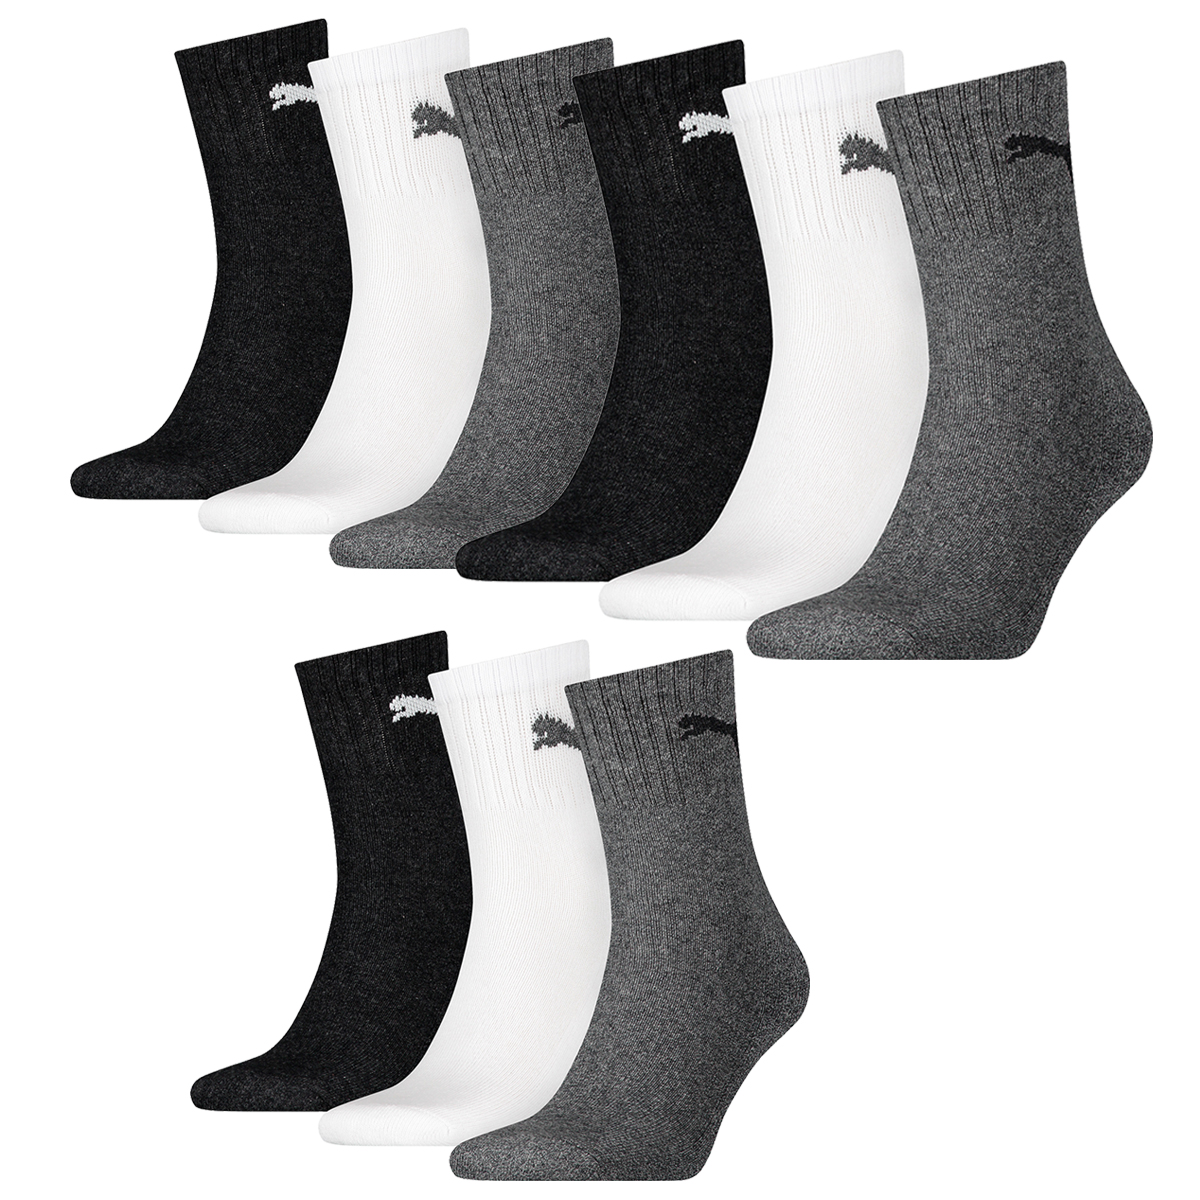 Puma Unisex Short Crew Socken Basic Sportsocken 6er Pack, Größe:35-38, Farbe:Grey/White/Black (882)